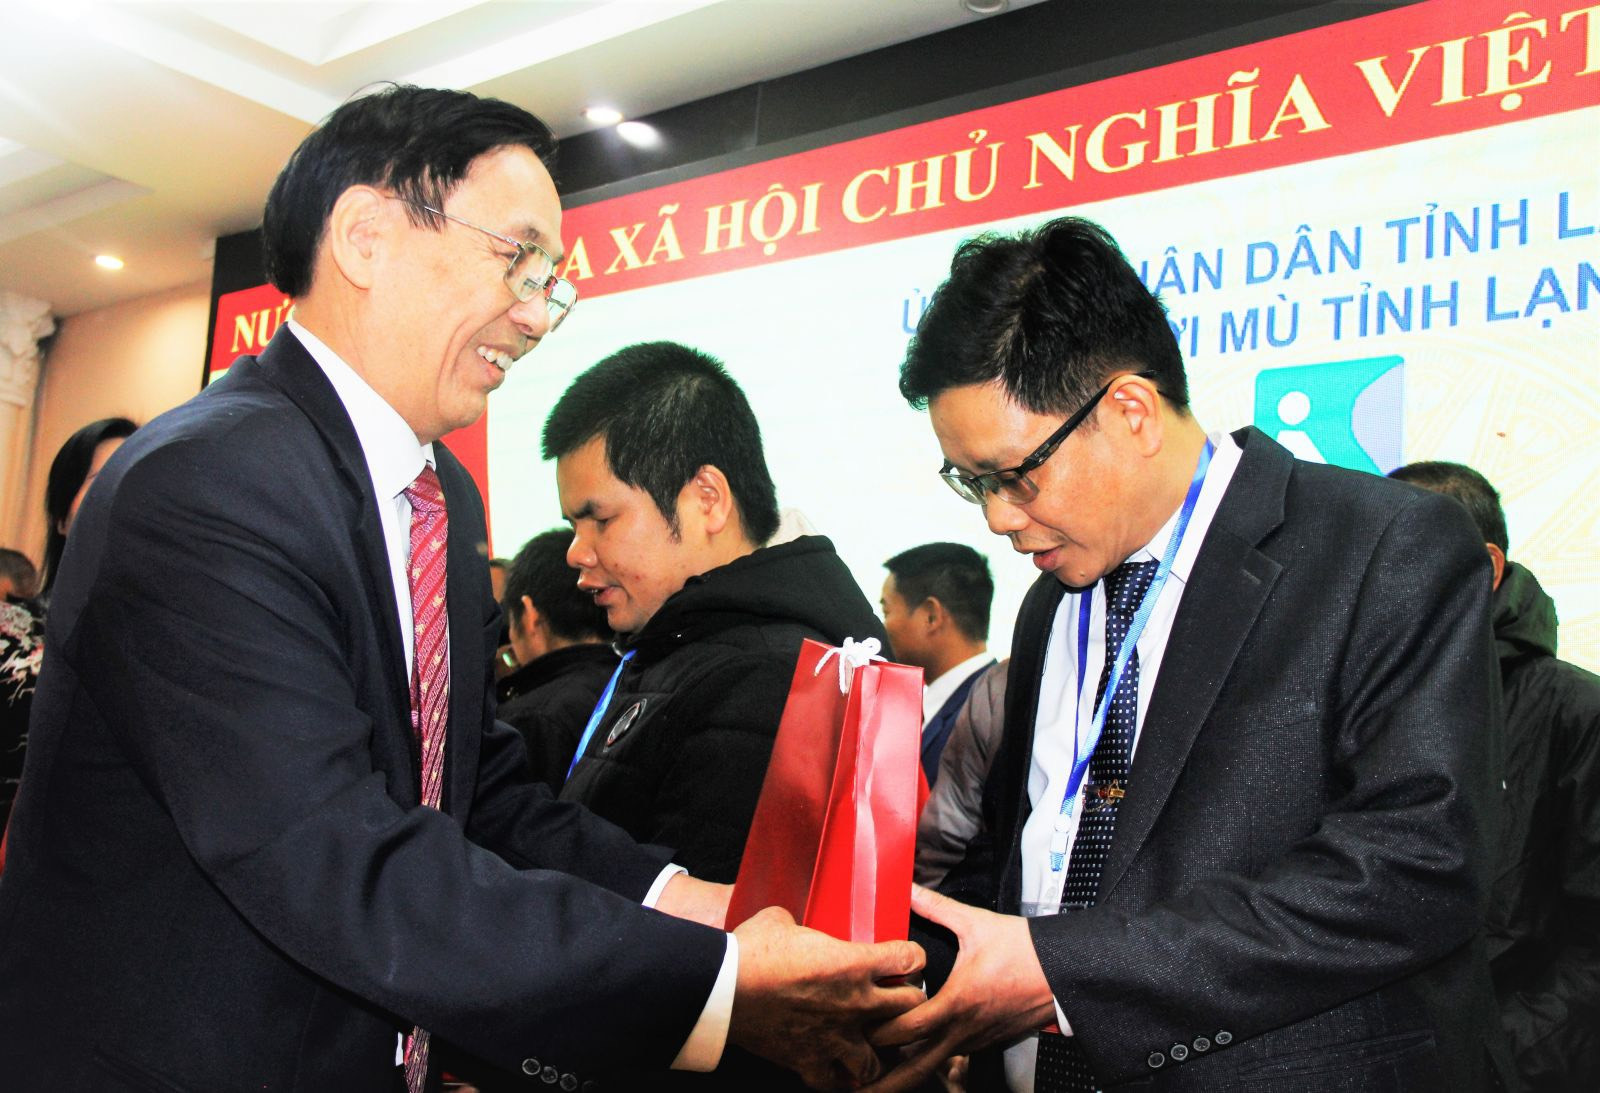 Hội người mù tỉnh Lạng Sơn tổ chức Đại hội lần thứ nhất, nhiệm kỳ 2020 - 2025